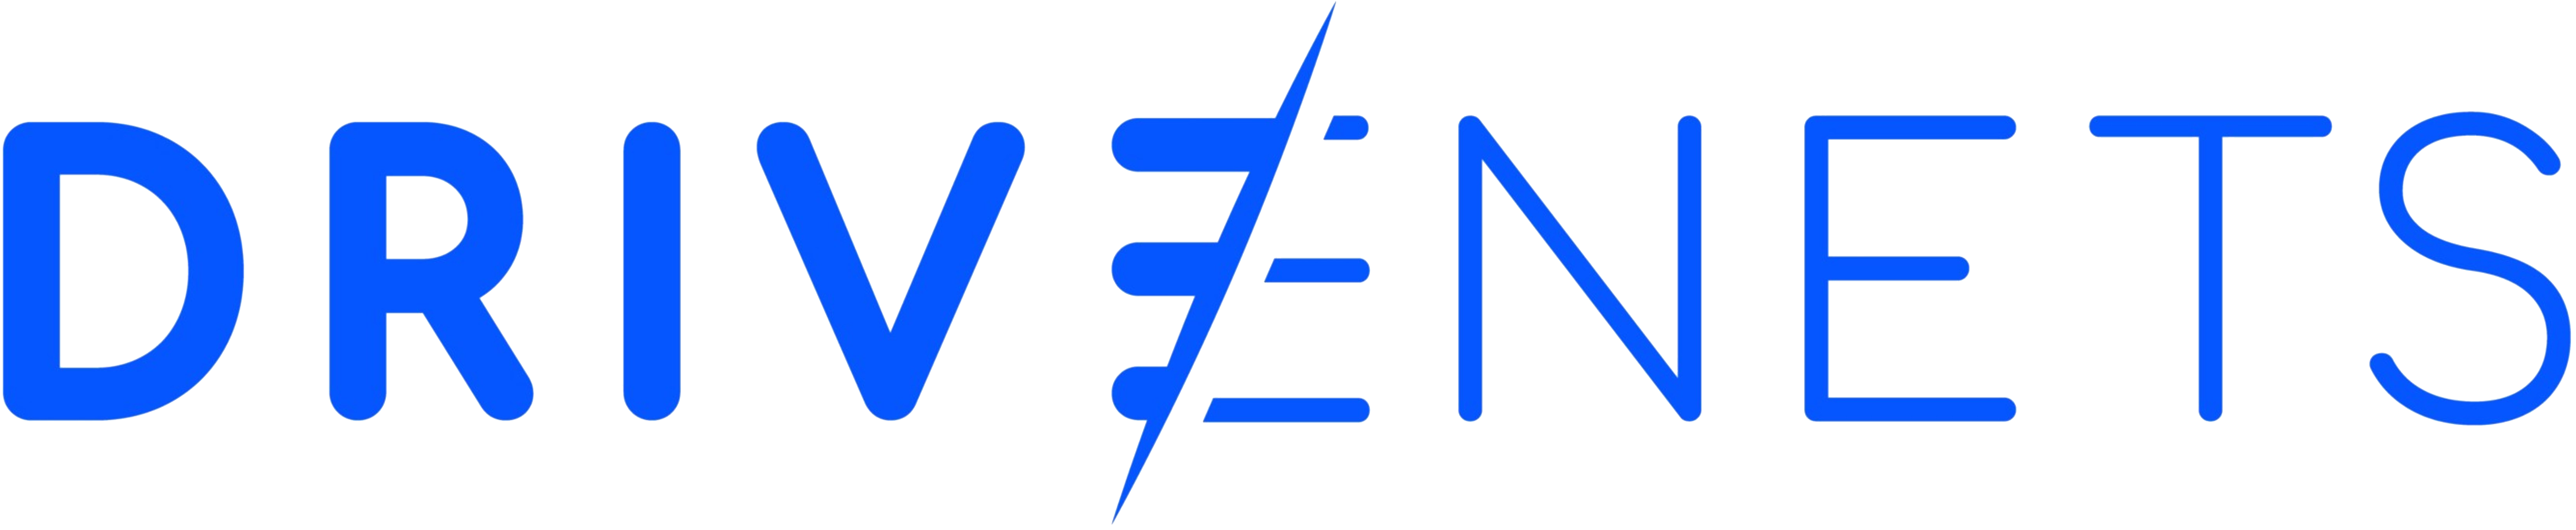 DriveNets vendor logo